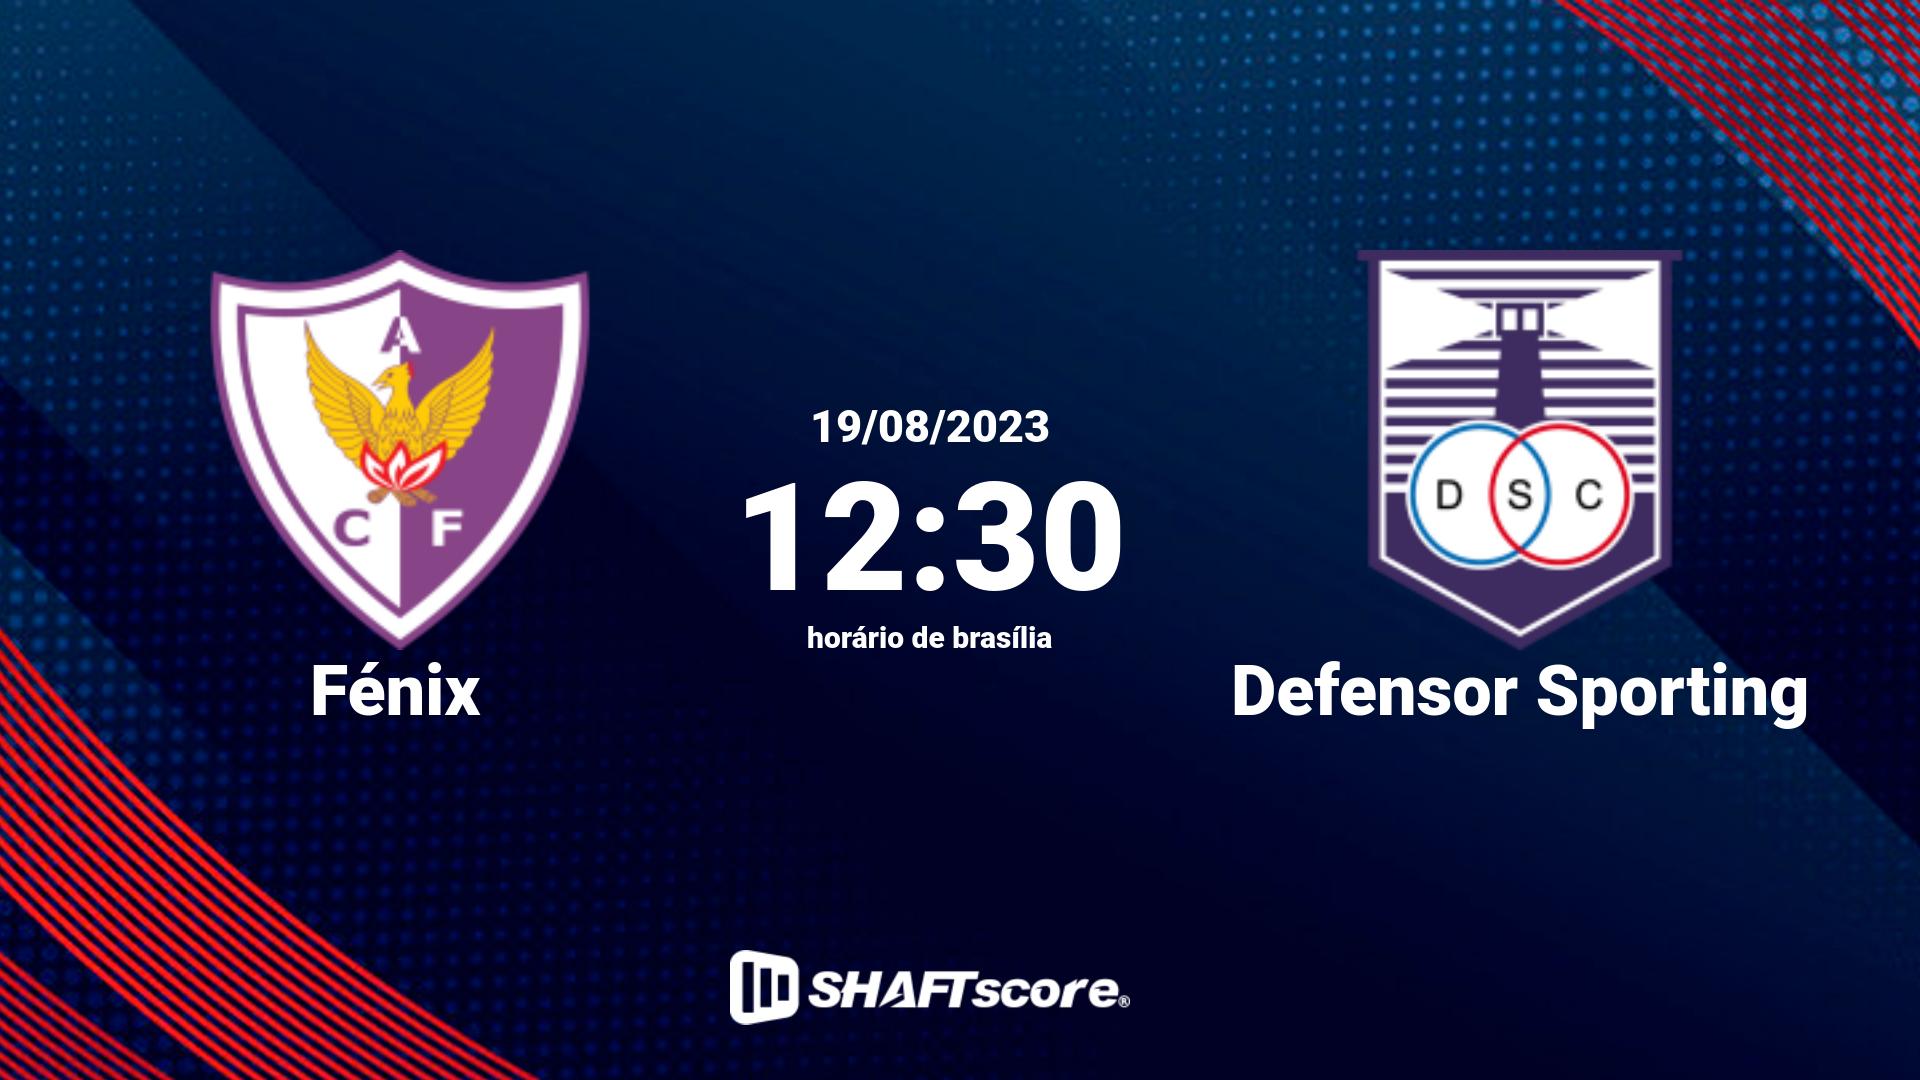 Estatísticas do jogo Fénix vs Defensor Sporting 19.08 12:30